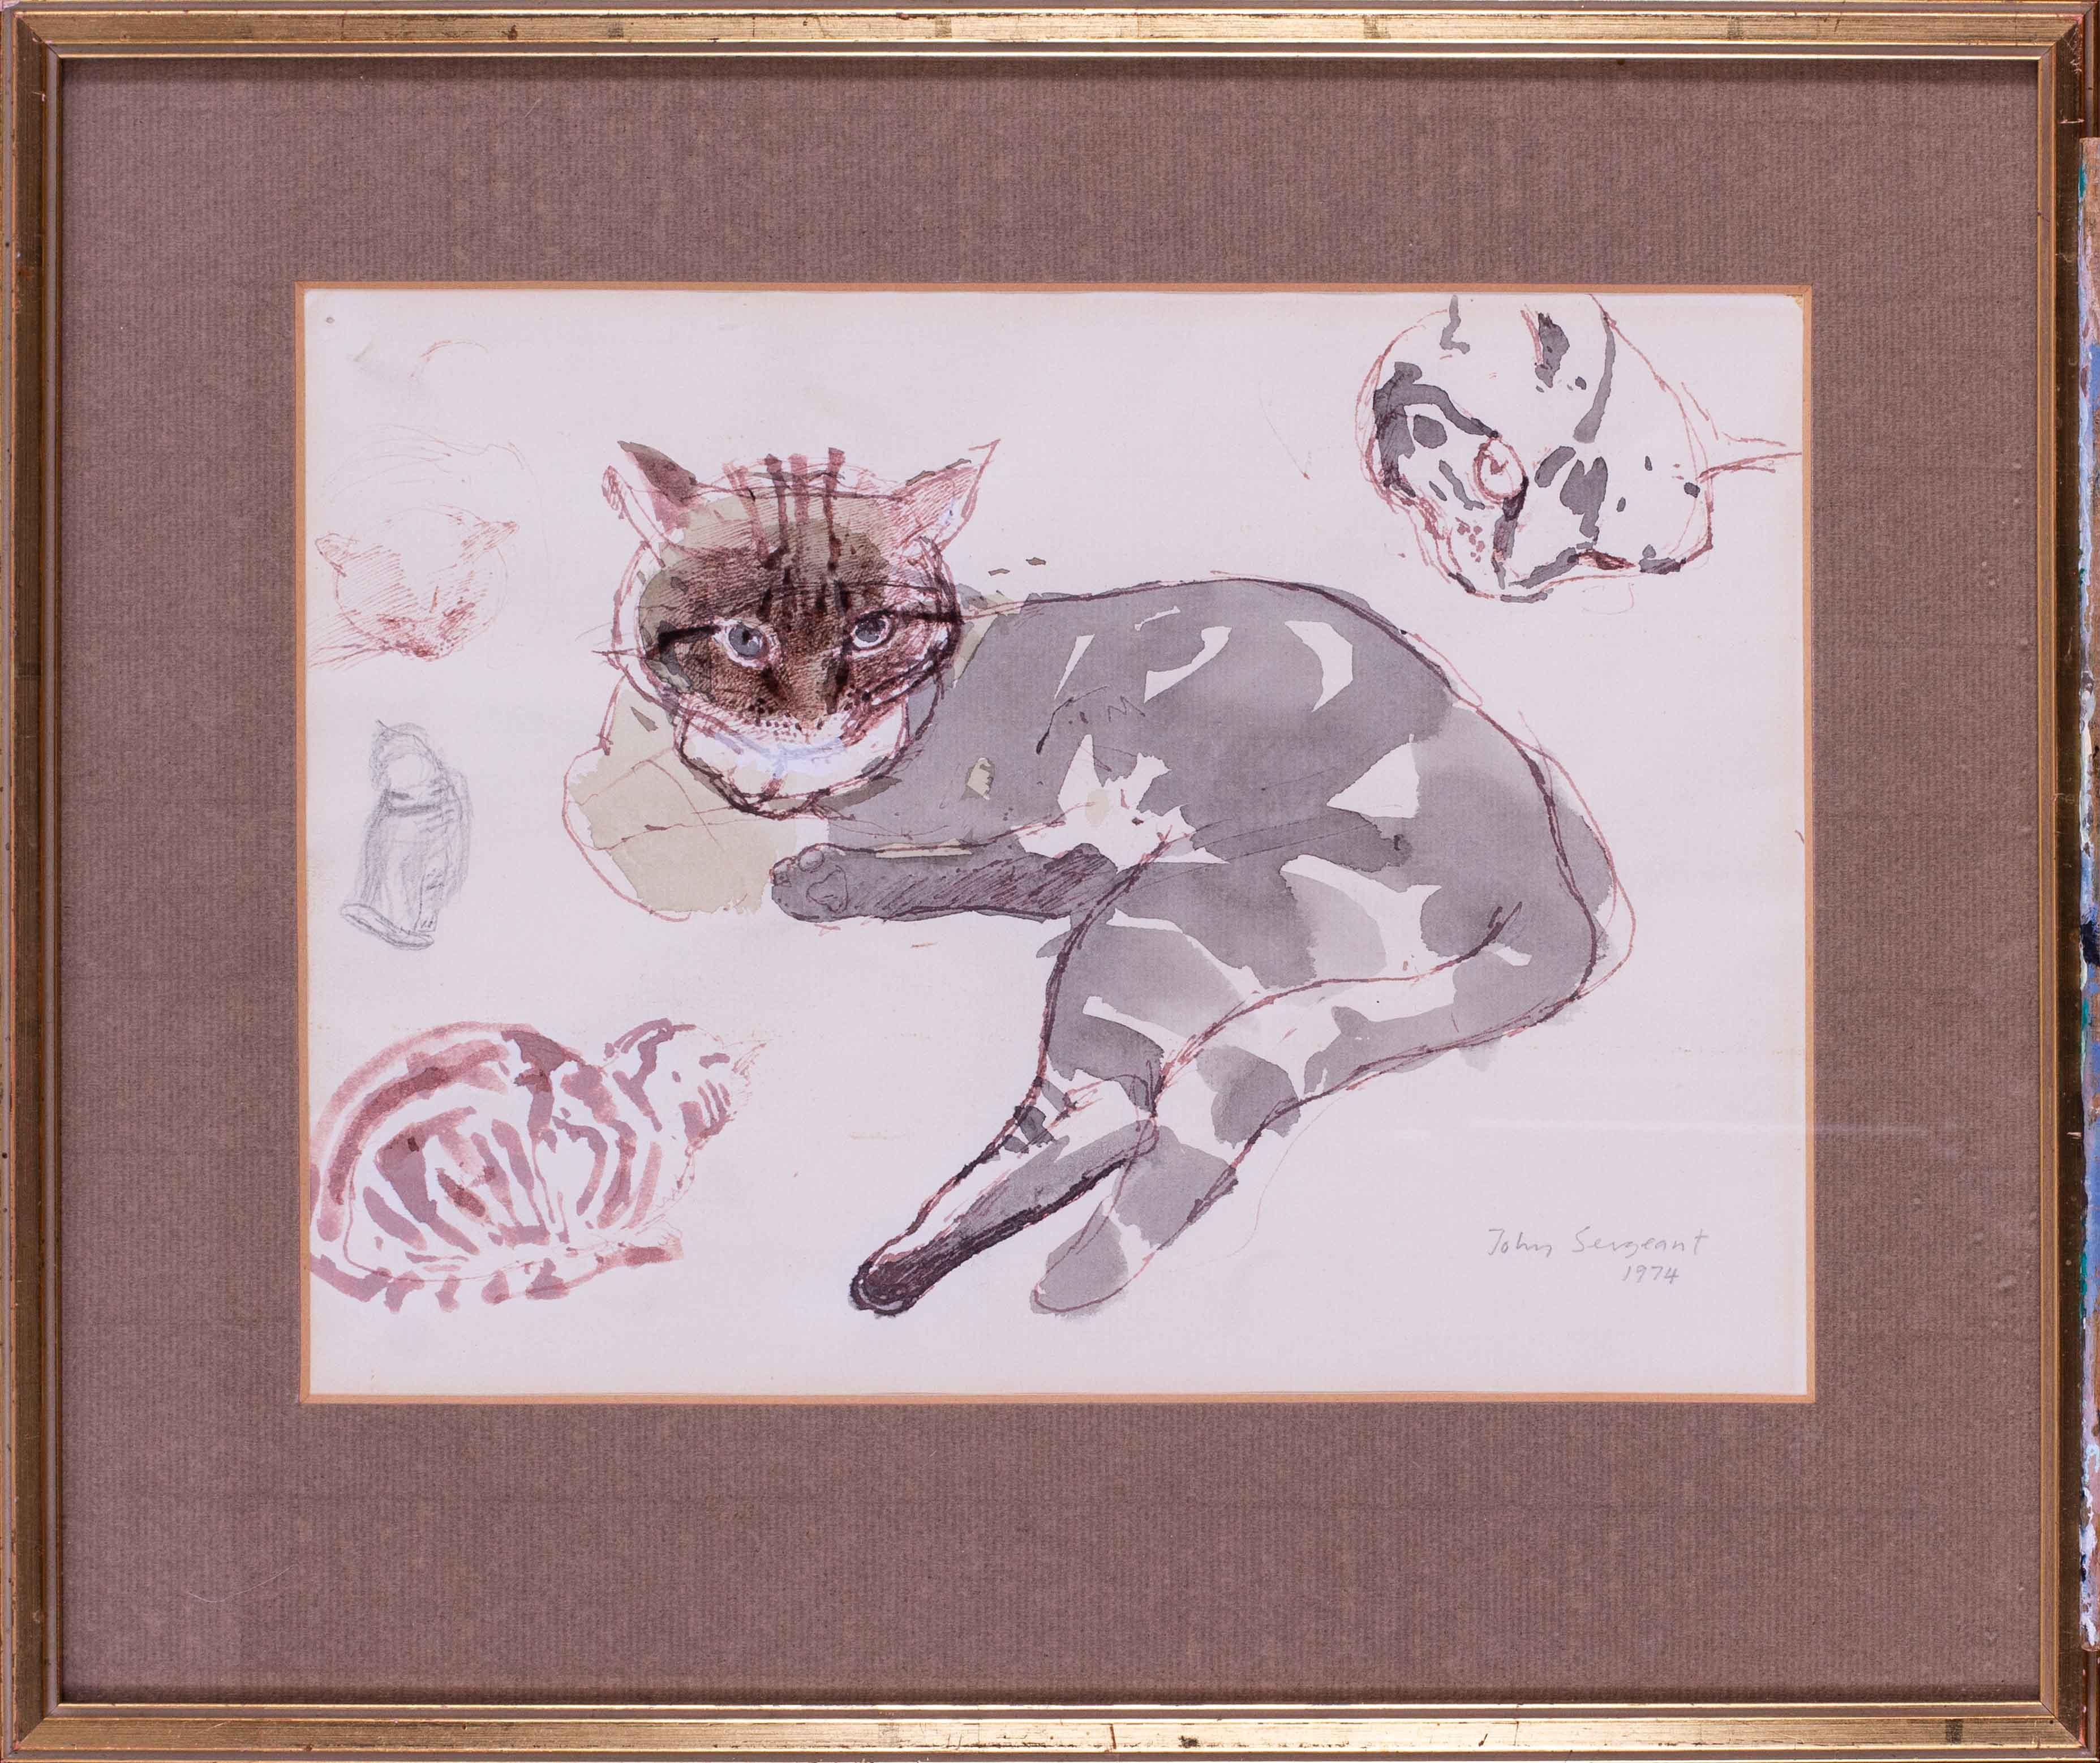 „Studien einerbby cat“, Mischtechniken auf Papier des britischen Künstlers John Sergeant